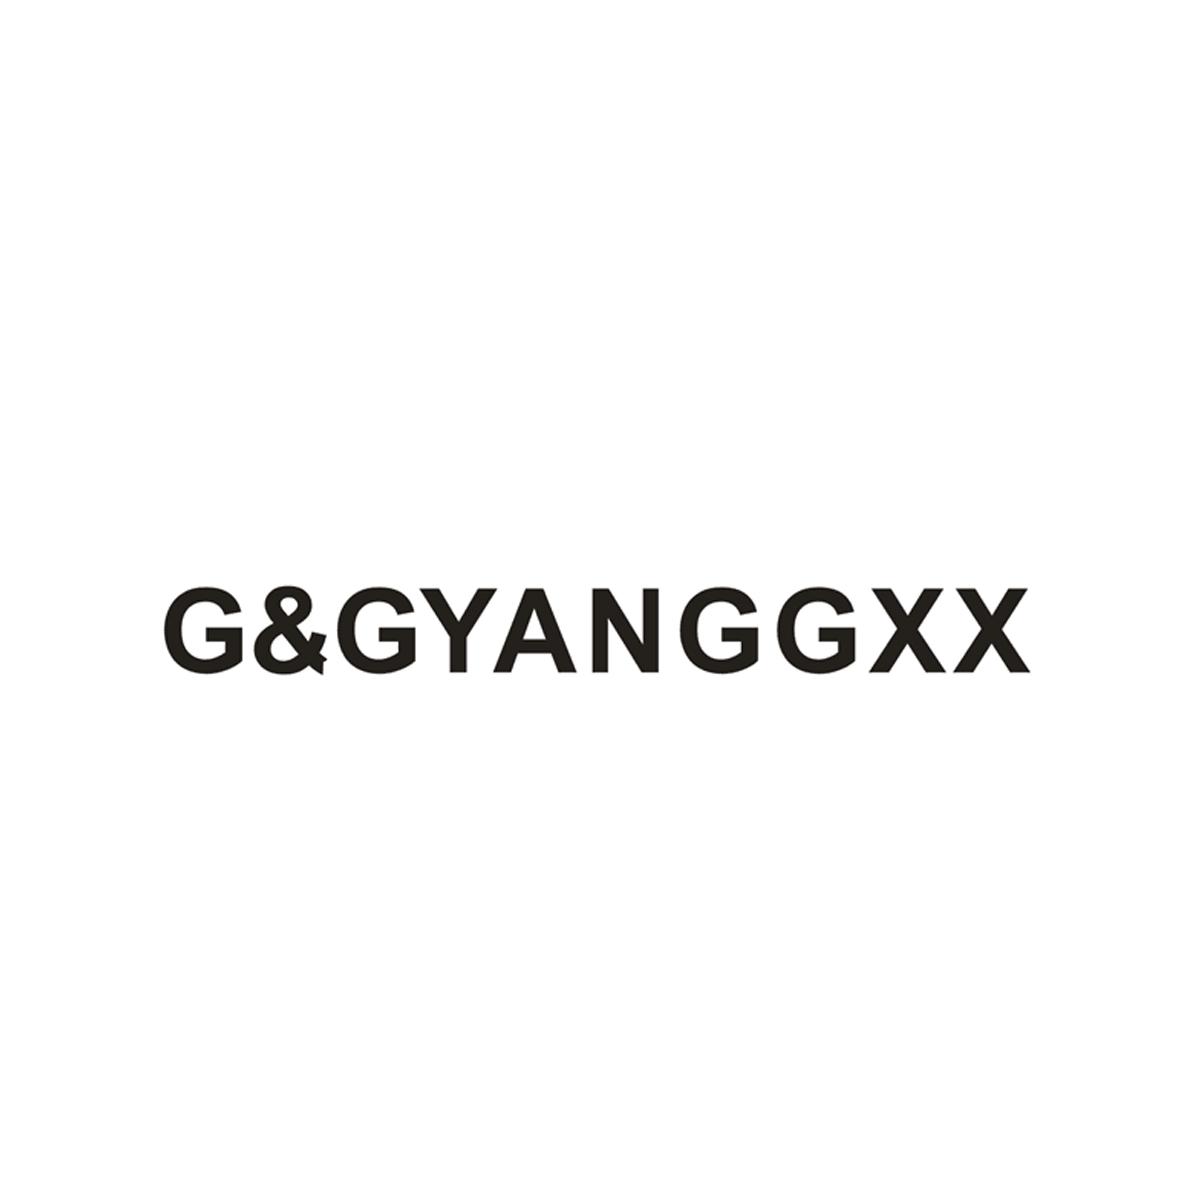 G&GYANGGXX